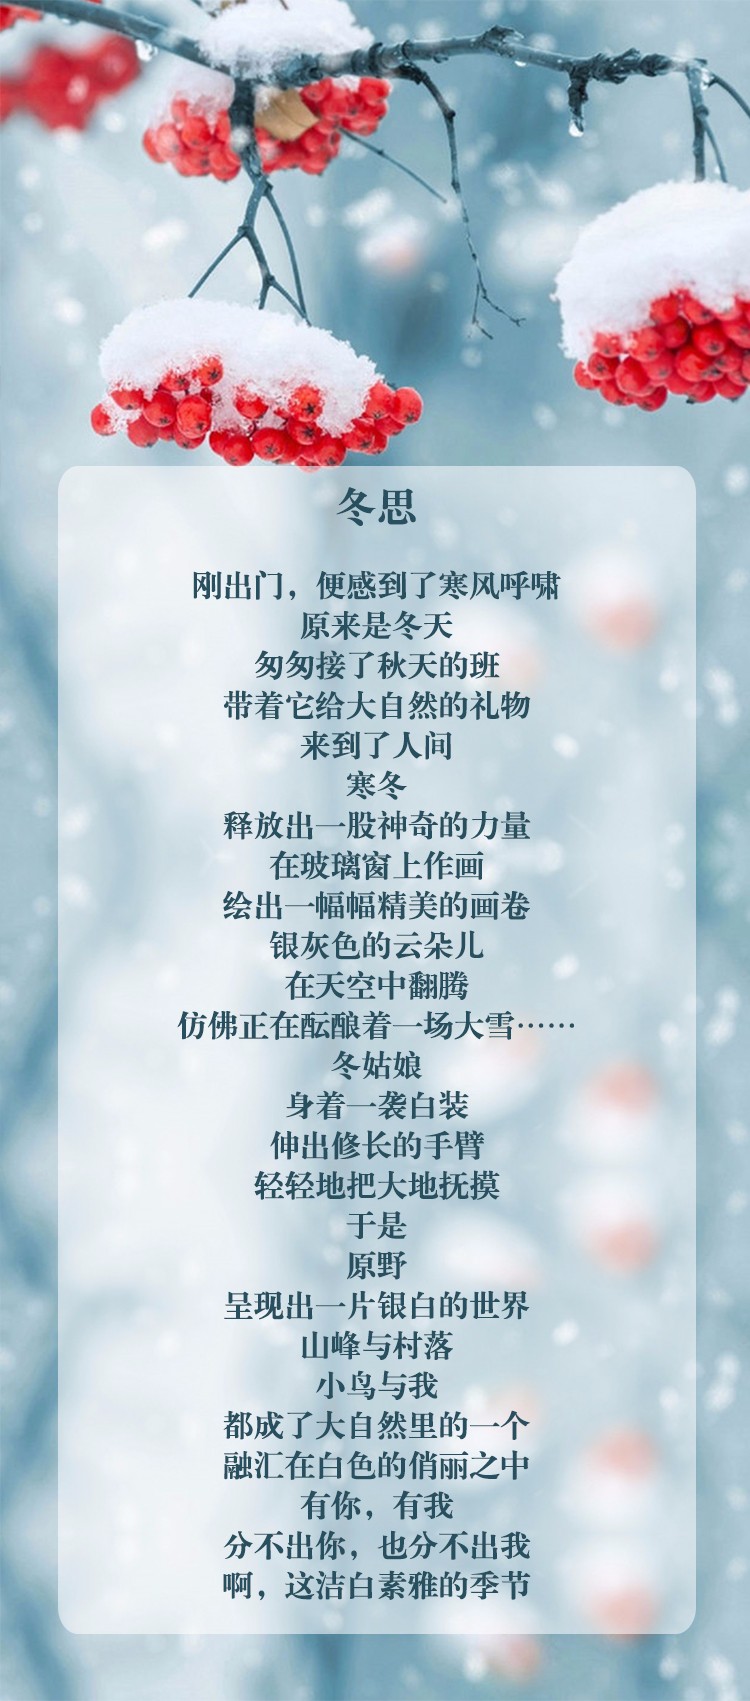 冬天来了,张伊也为您读诗一首《冬思》,让你感悟冬季的美好.